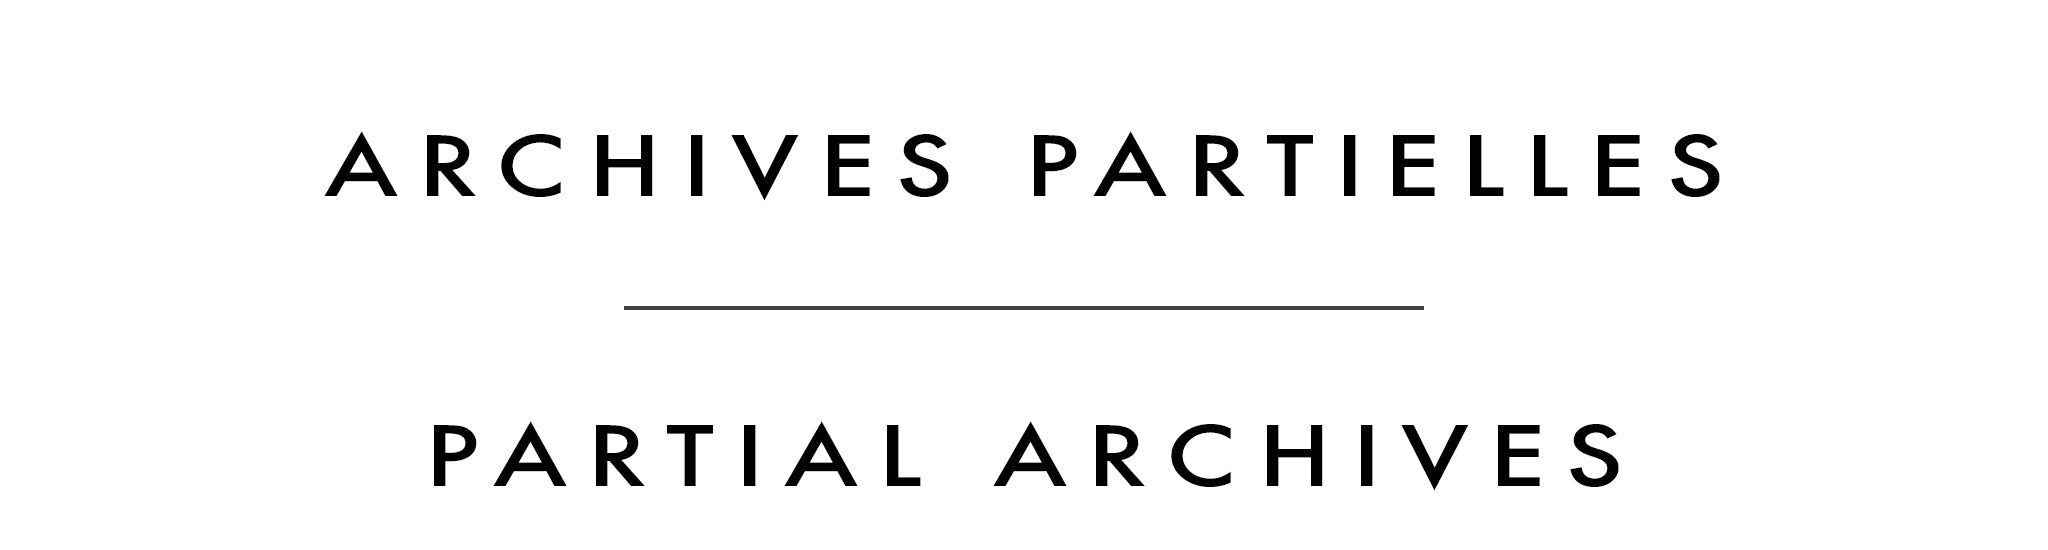 Archives partielles | Partial Archives | Jean-Pierre Guay